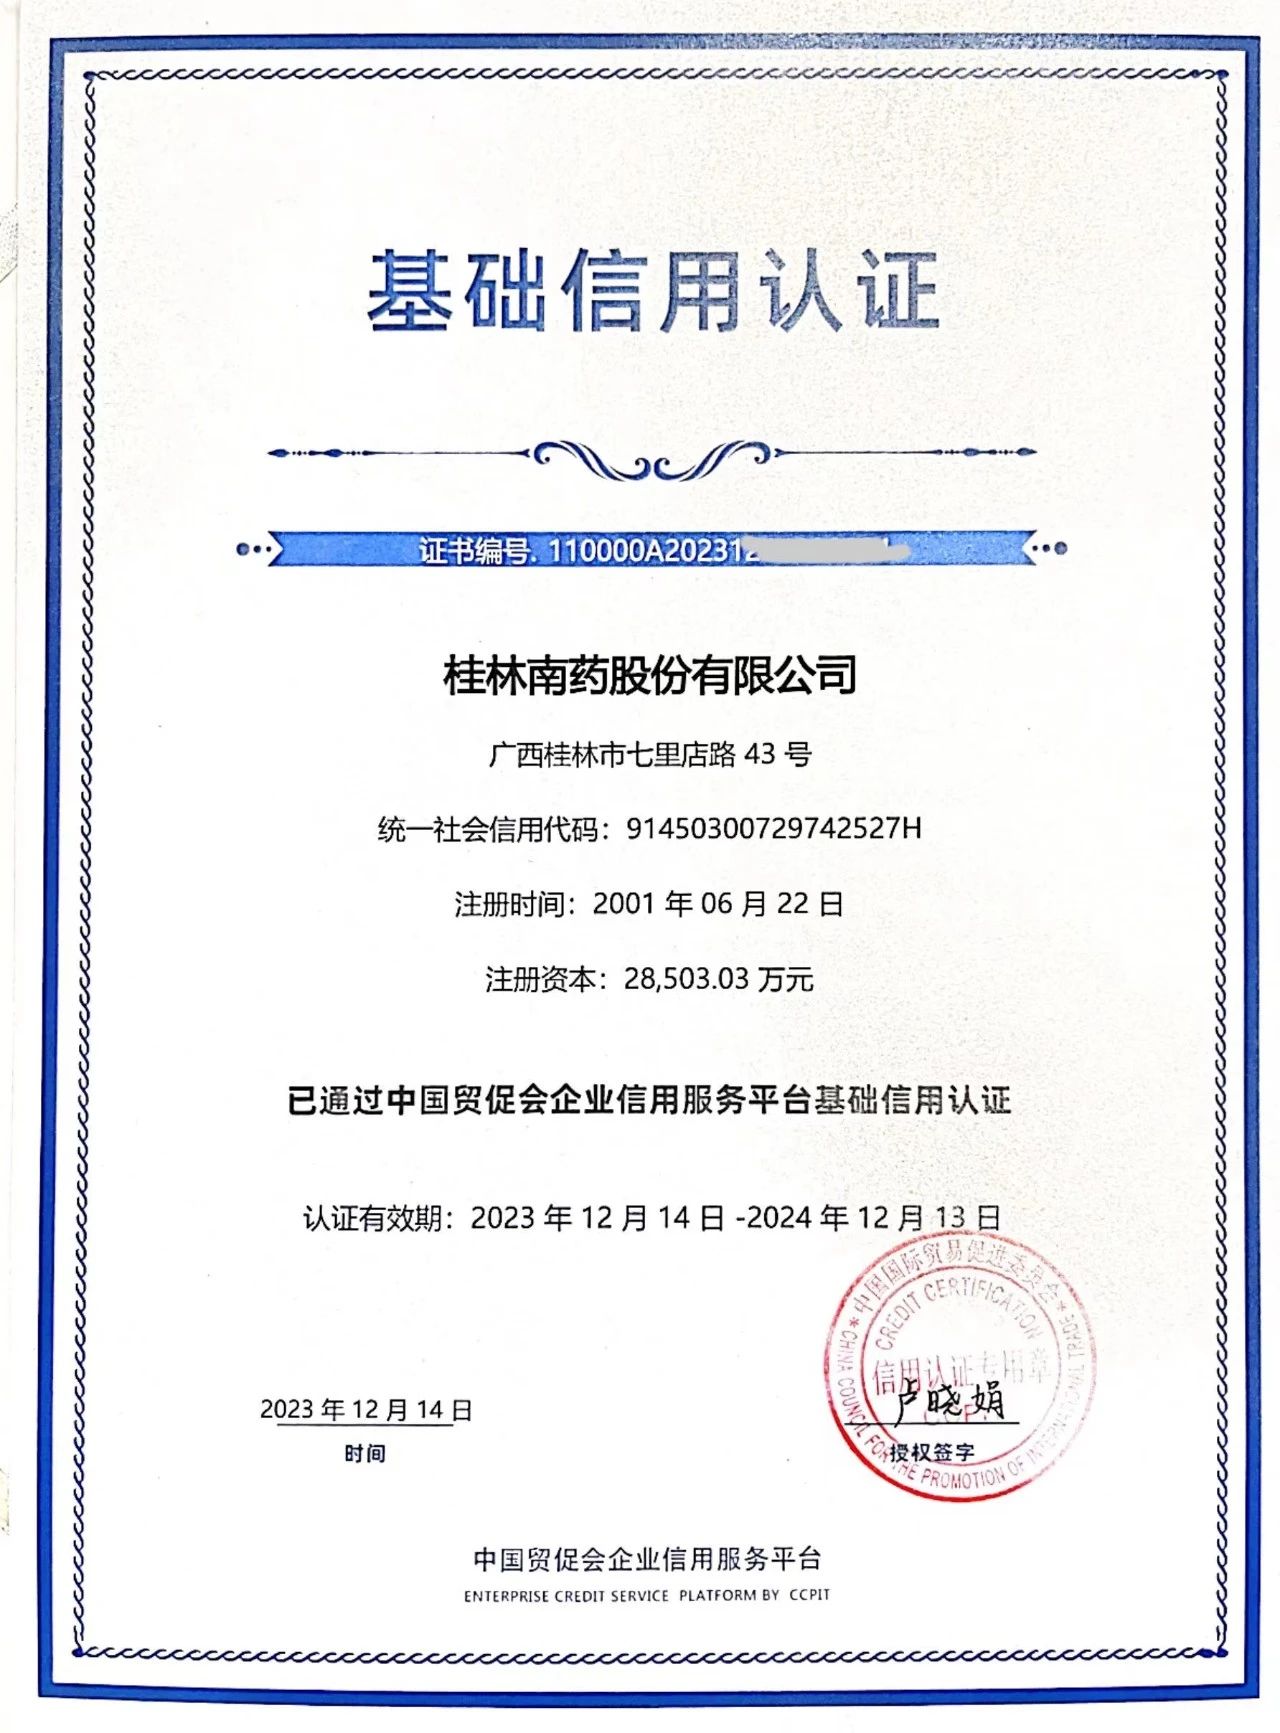 桂林南药通过中国贸促会企业信用服务平台基础信用认证